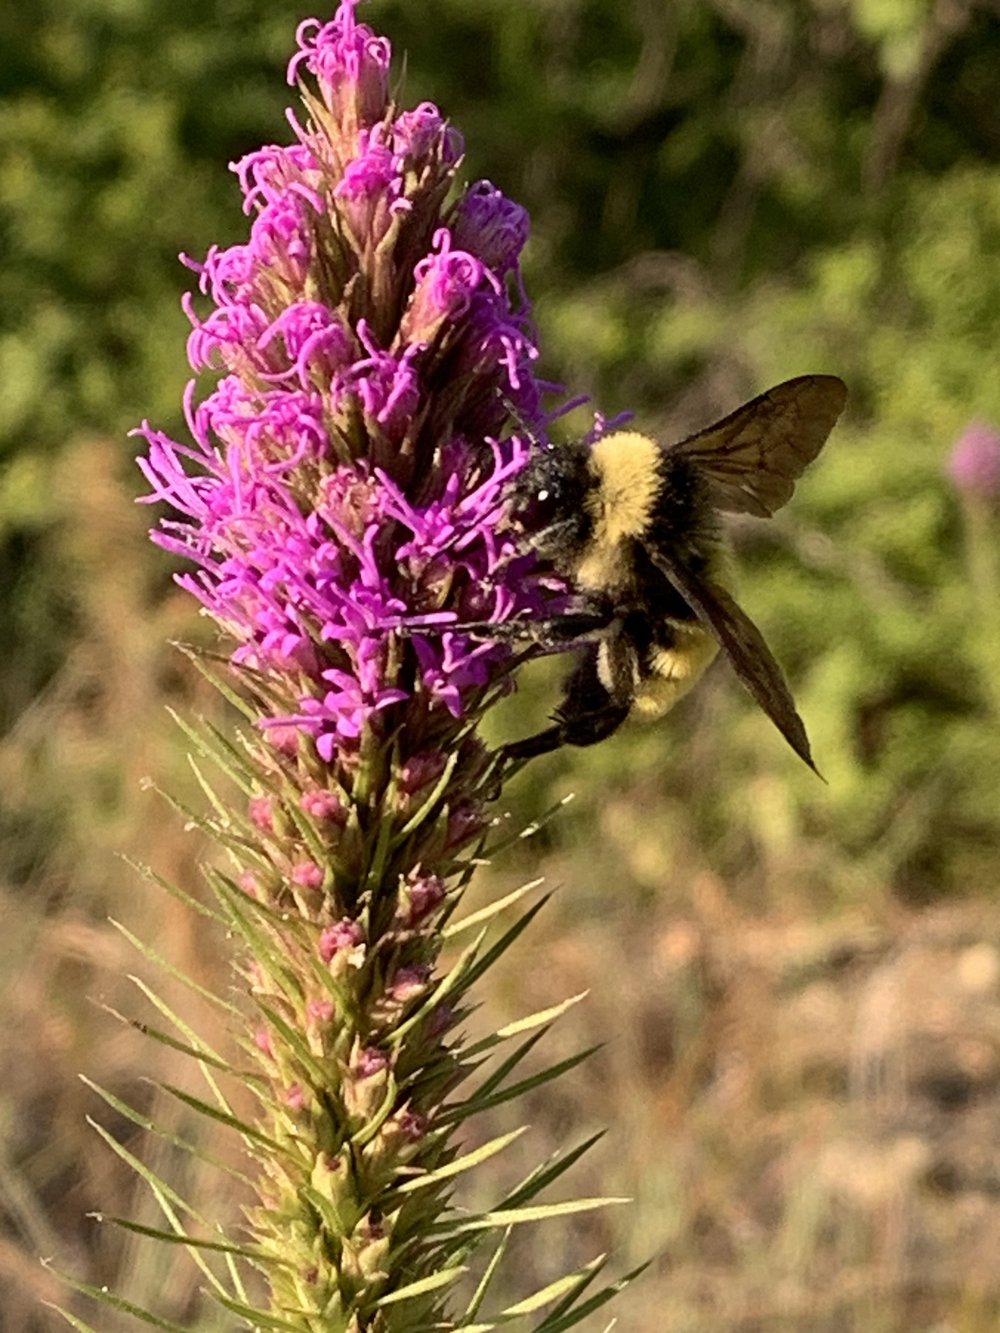   American Bumble Bee   (Bombus pensylvanicus)  